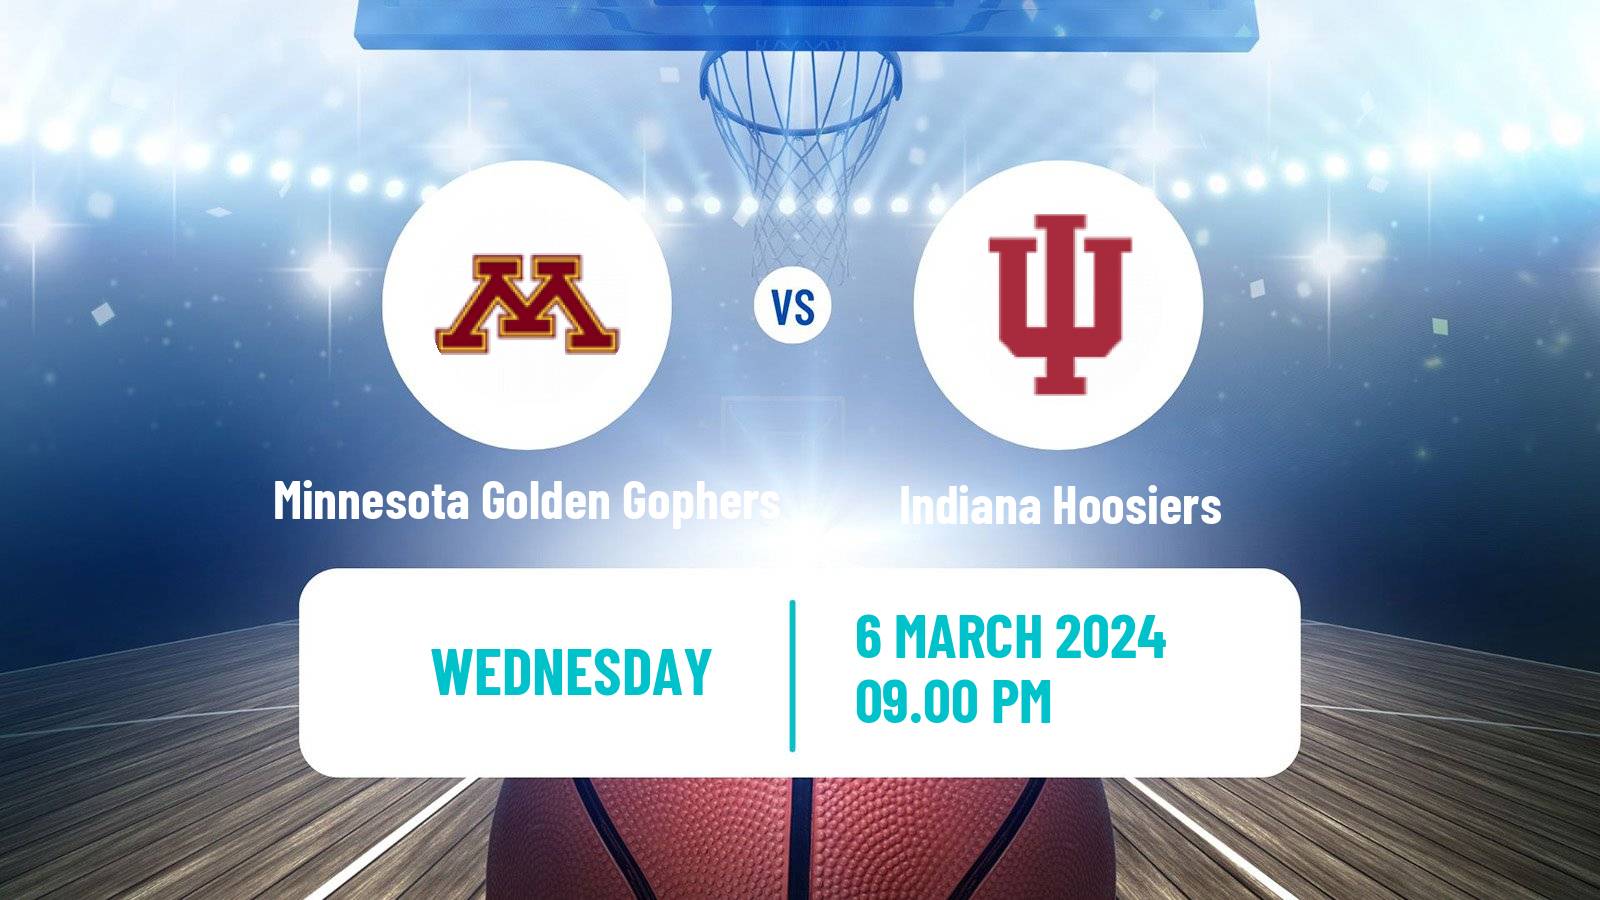 Basketball NCAA College Basketball Minnesota Golden Gophers - Indiana Hoosiers